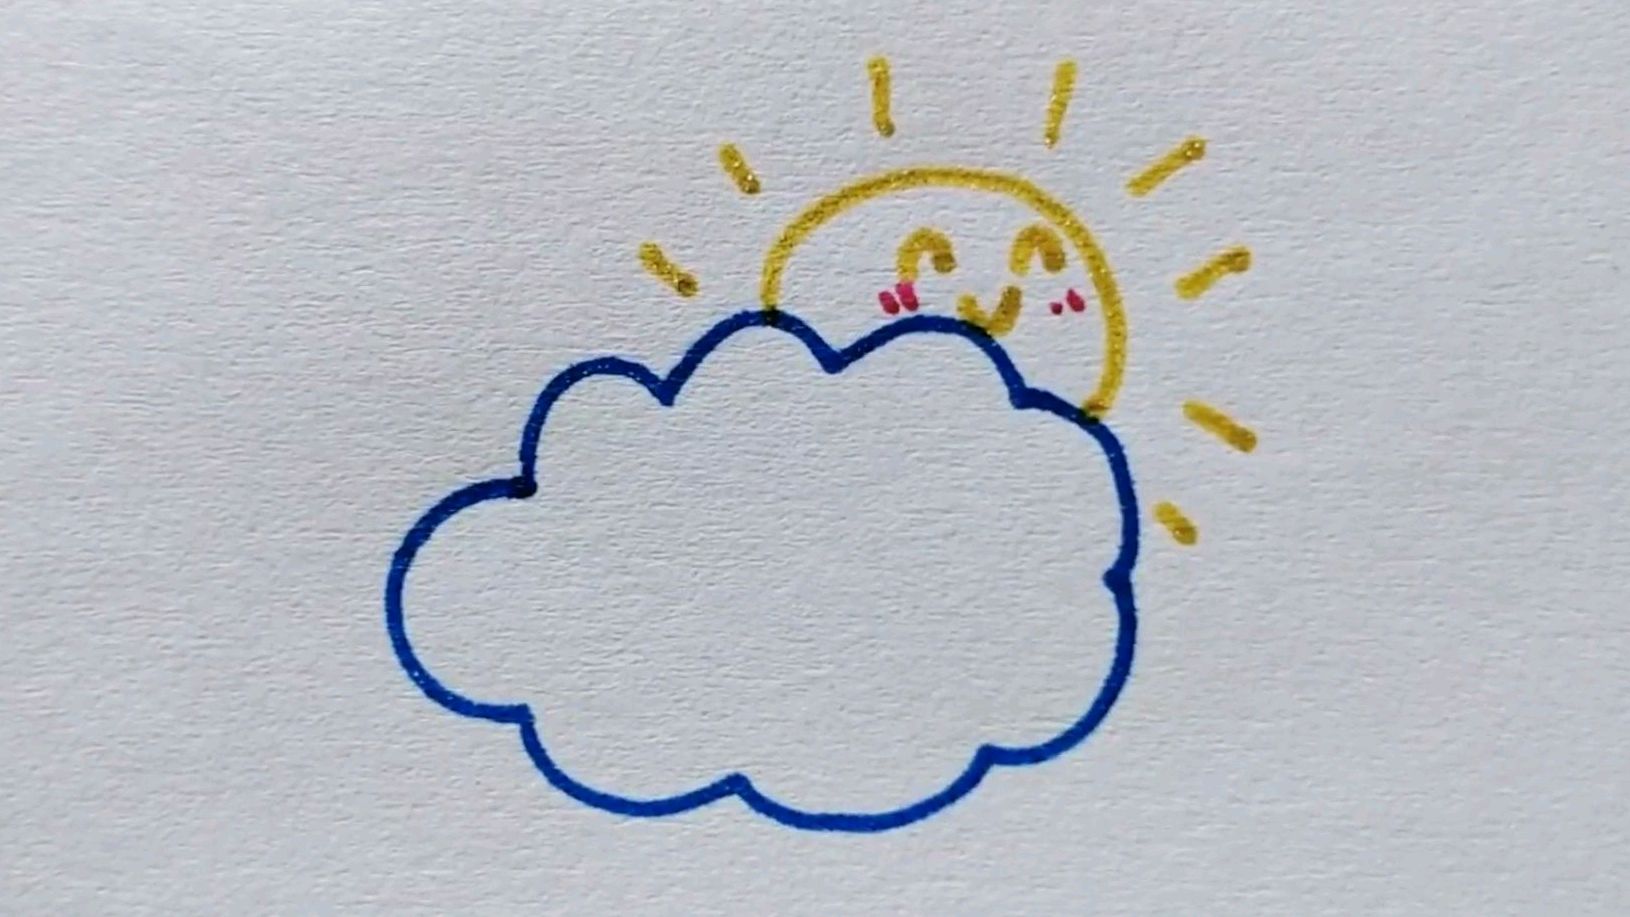 2彩虹云朵简笔画:首先画上可爱的云朵,在下方使用马克笔画上彩色彩虹